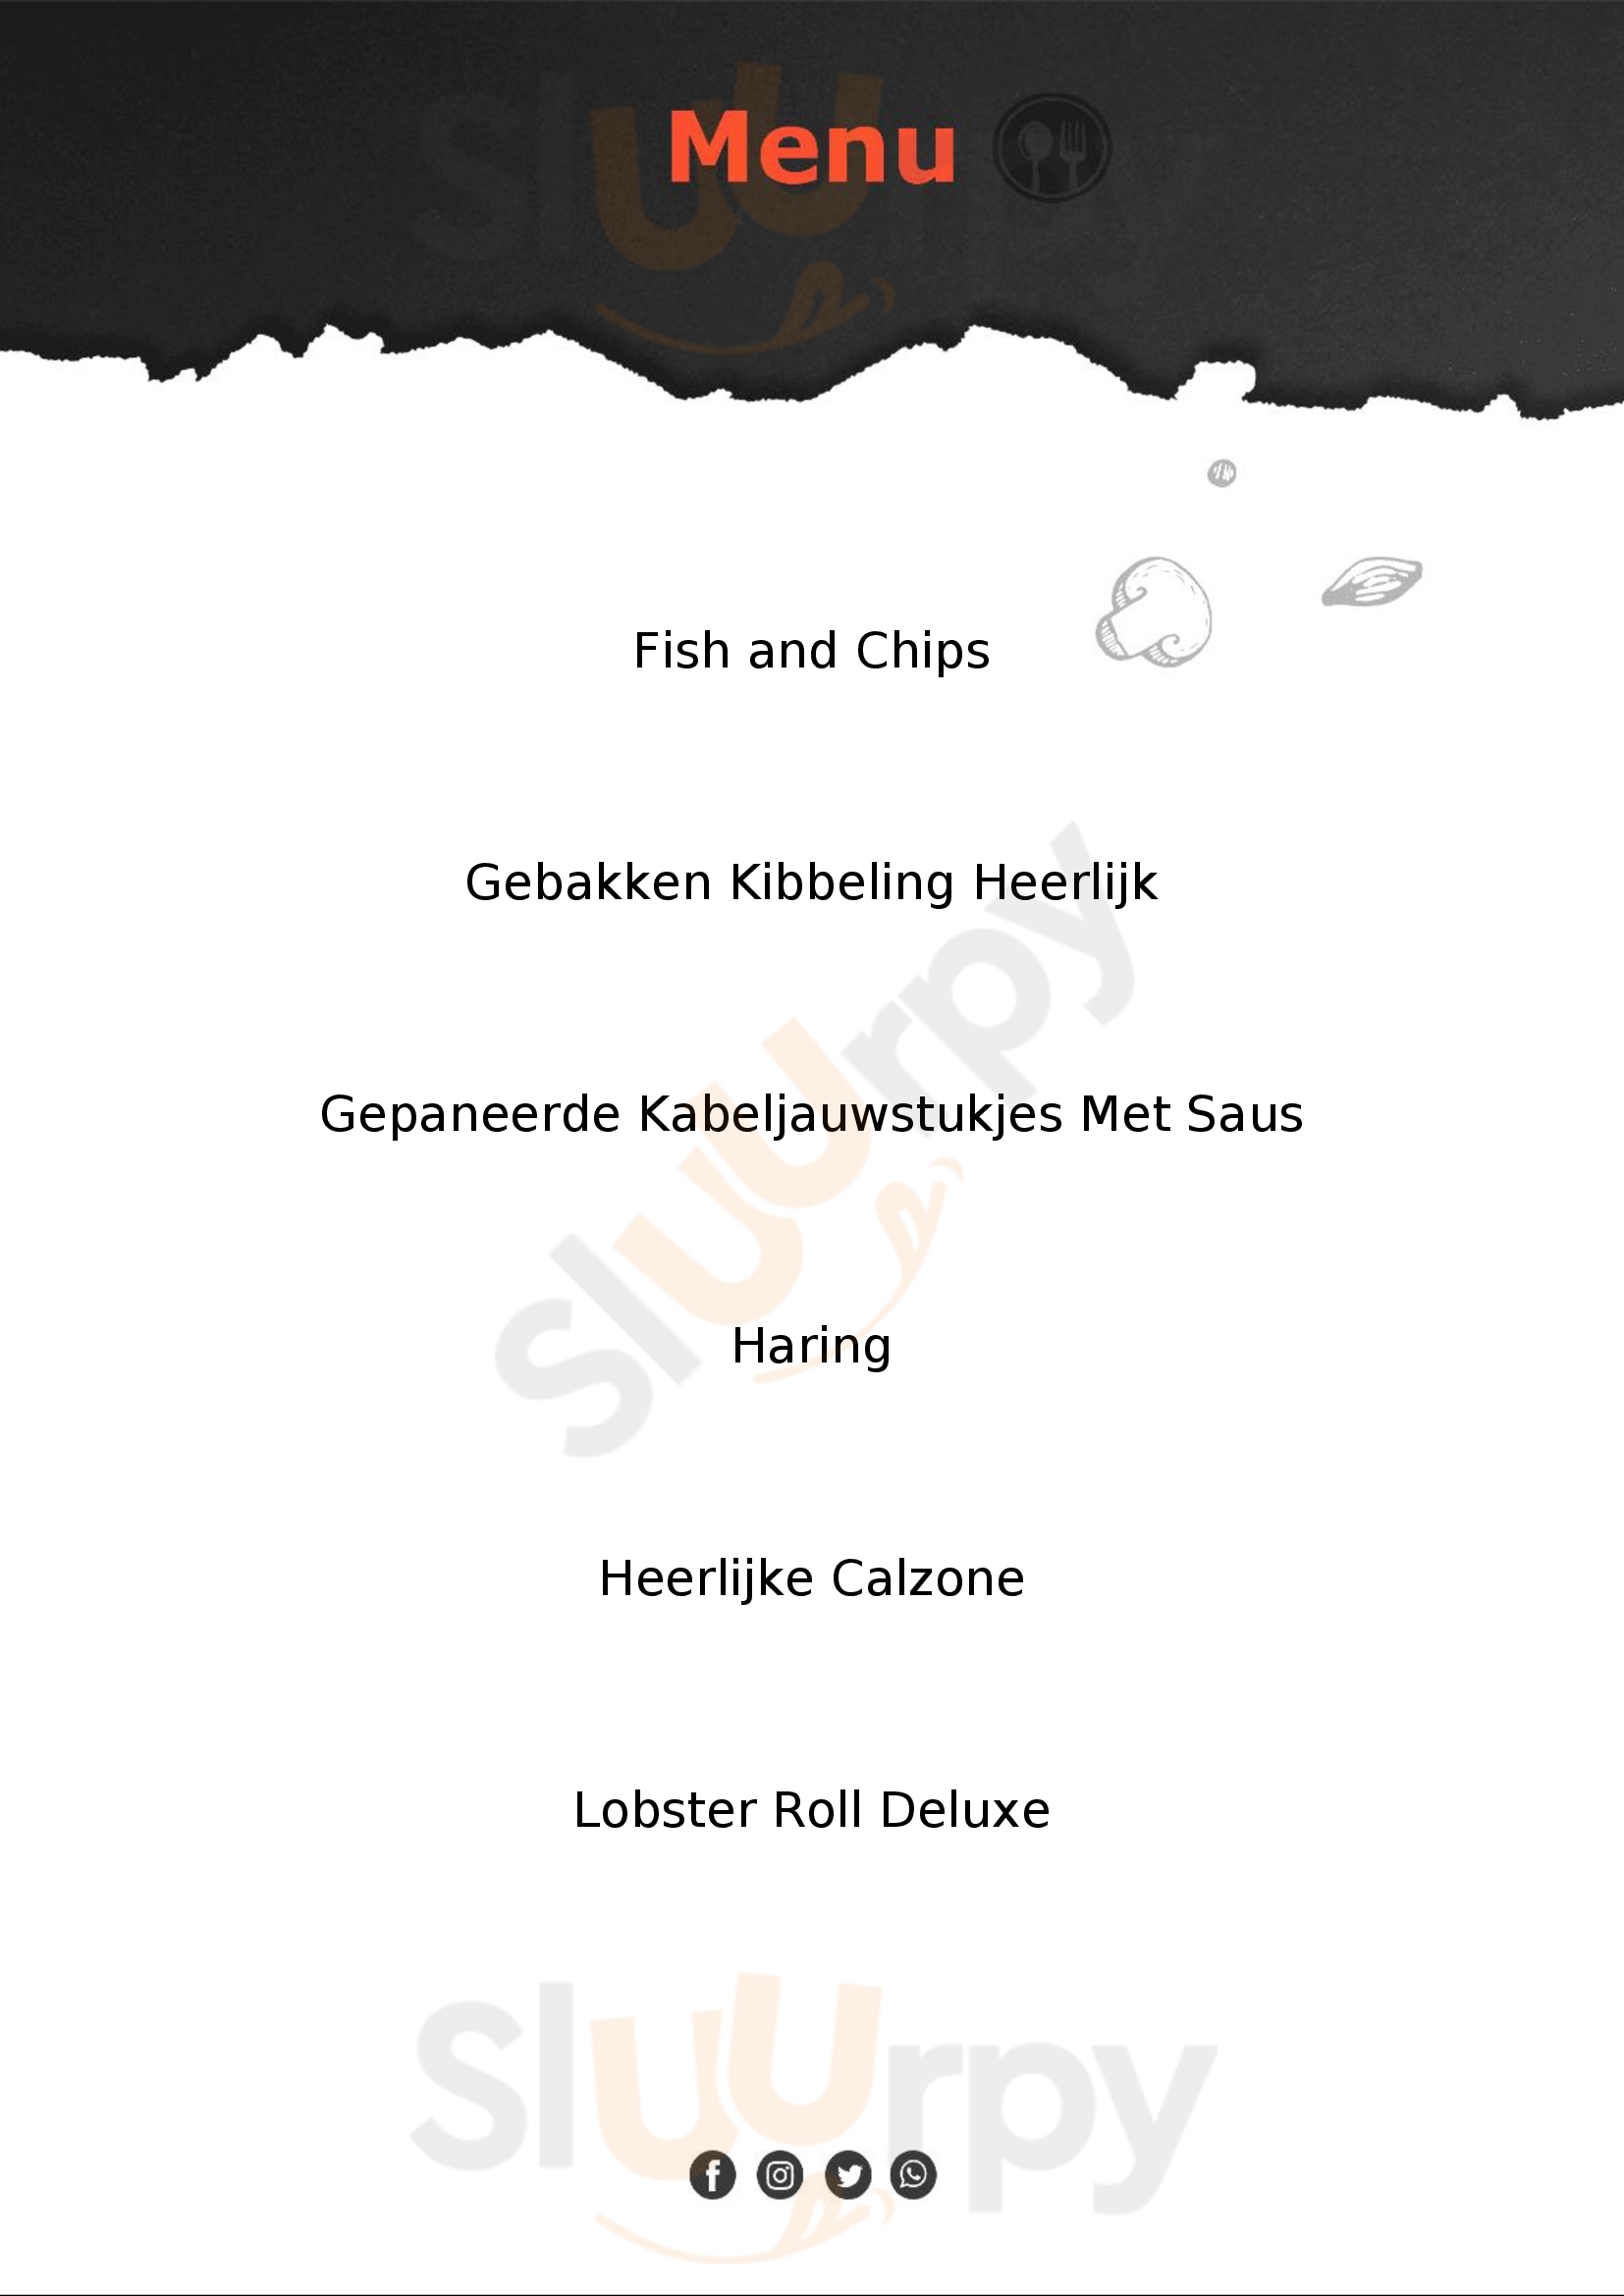 Seafood Sloterdijk Amsterdam Menu - 1